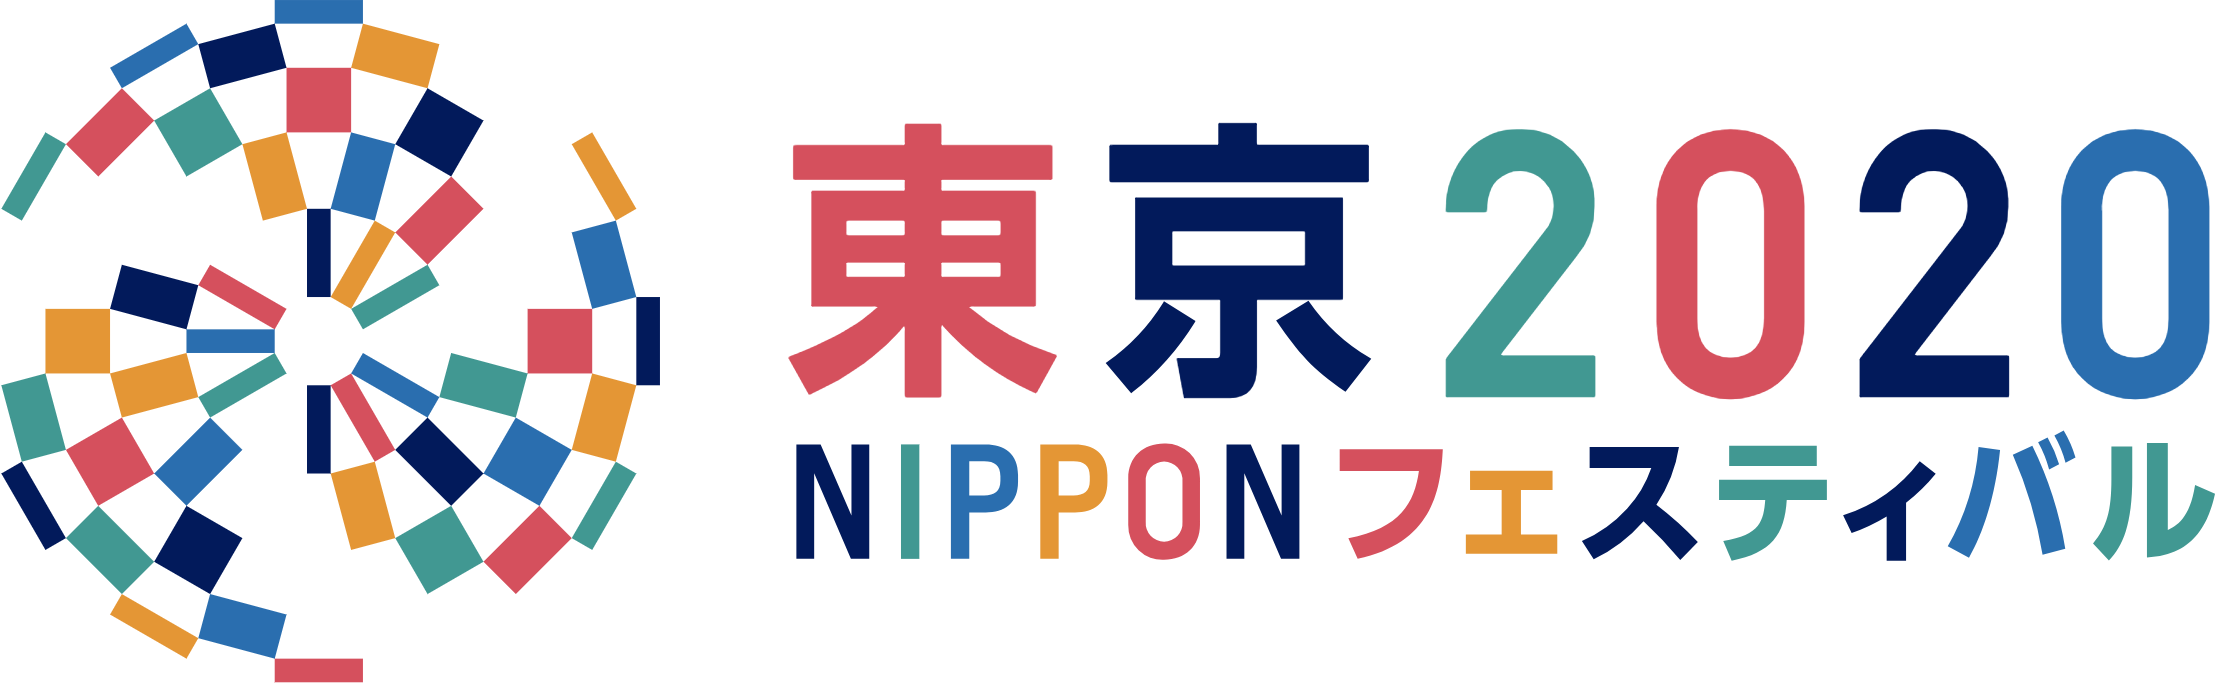 東京2020NIPPONフェスティバル